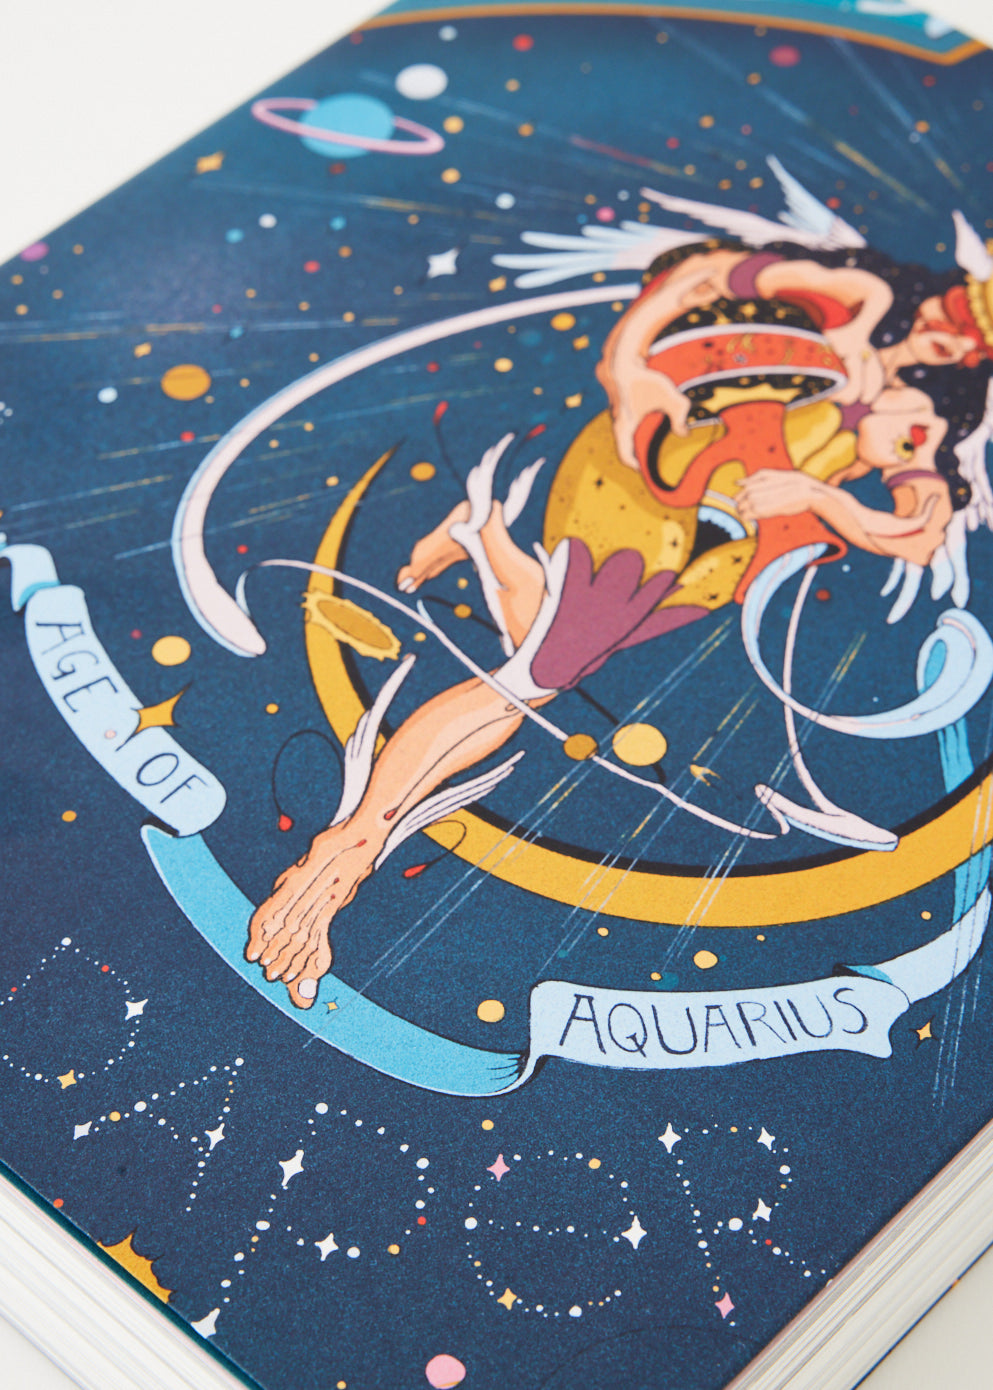 Acne Paper Issue 16: The Age of Aquarius